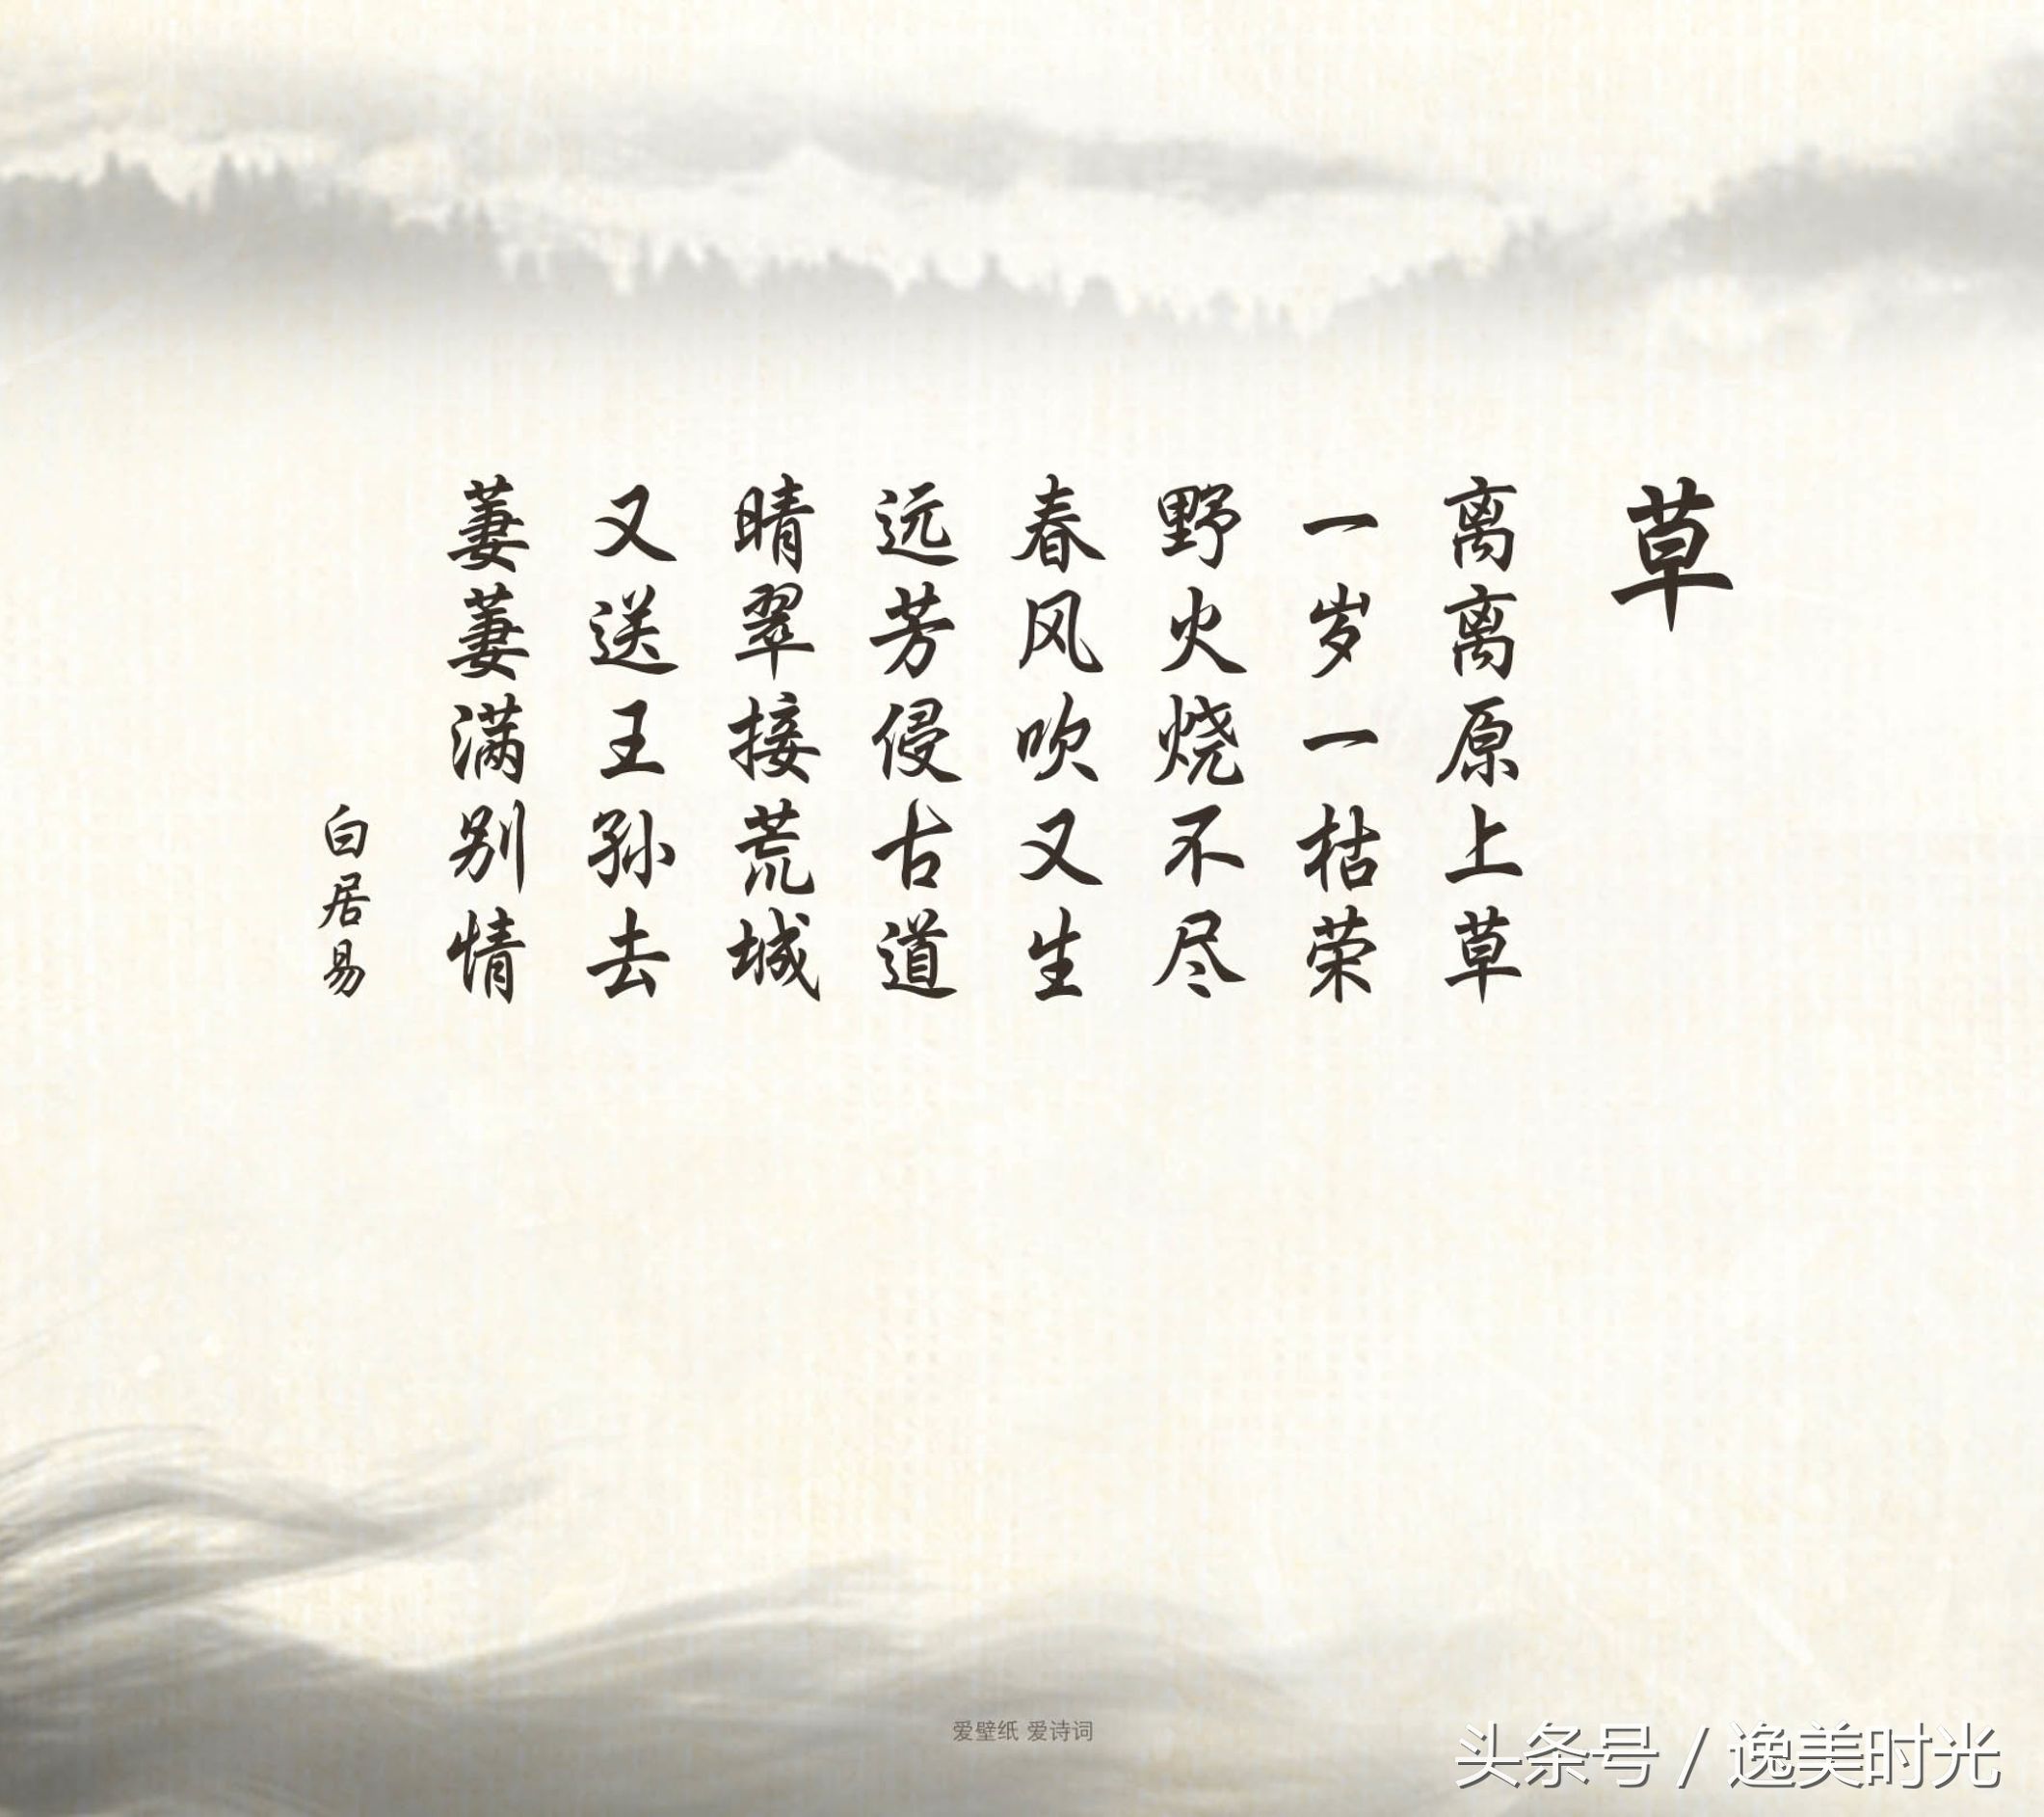 中国最有影响力的十大诗词 牢记后 绝对唬人